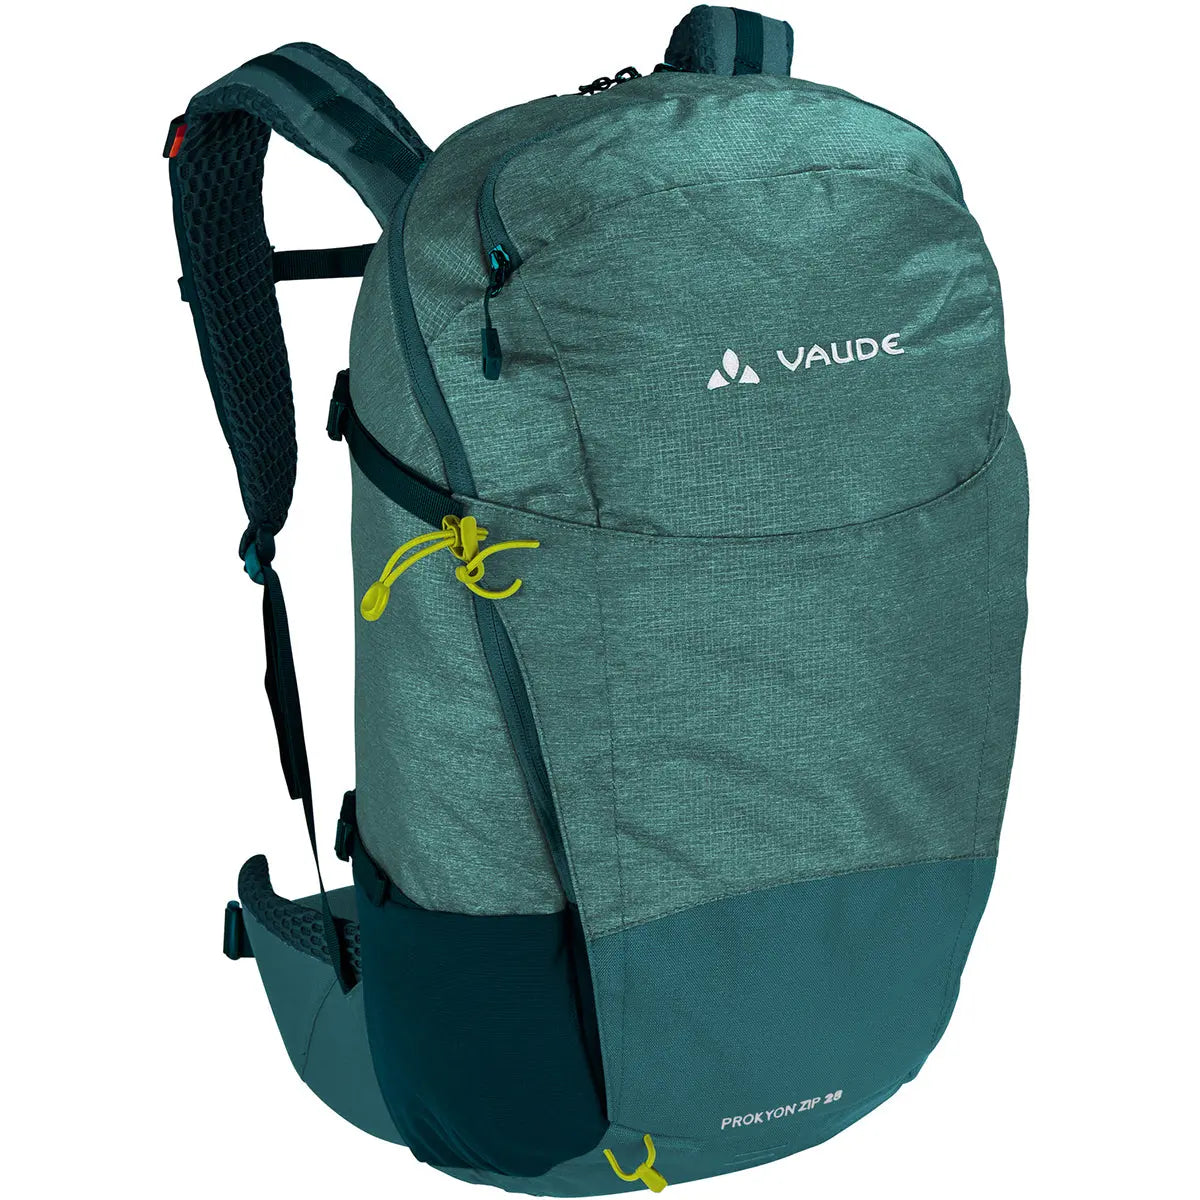 Vaude Prokyon Zip 28 L Hiking Backpack